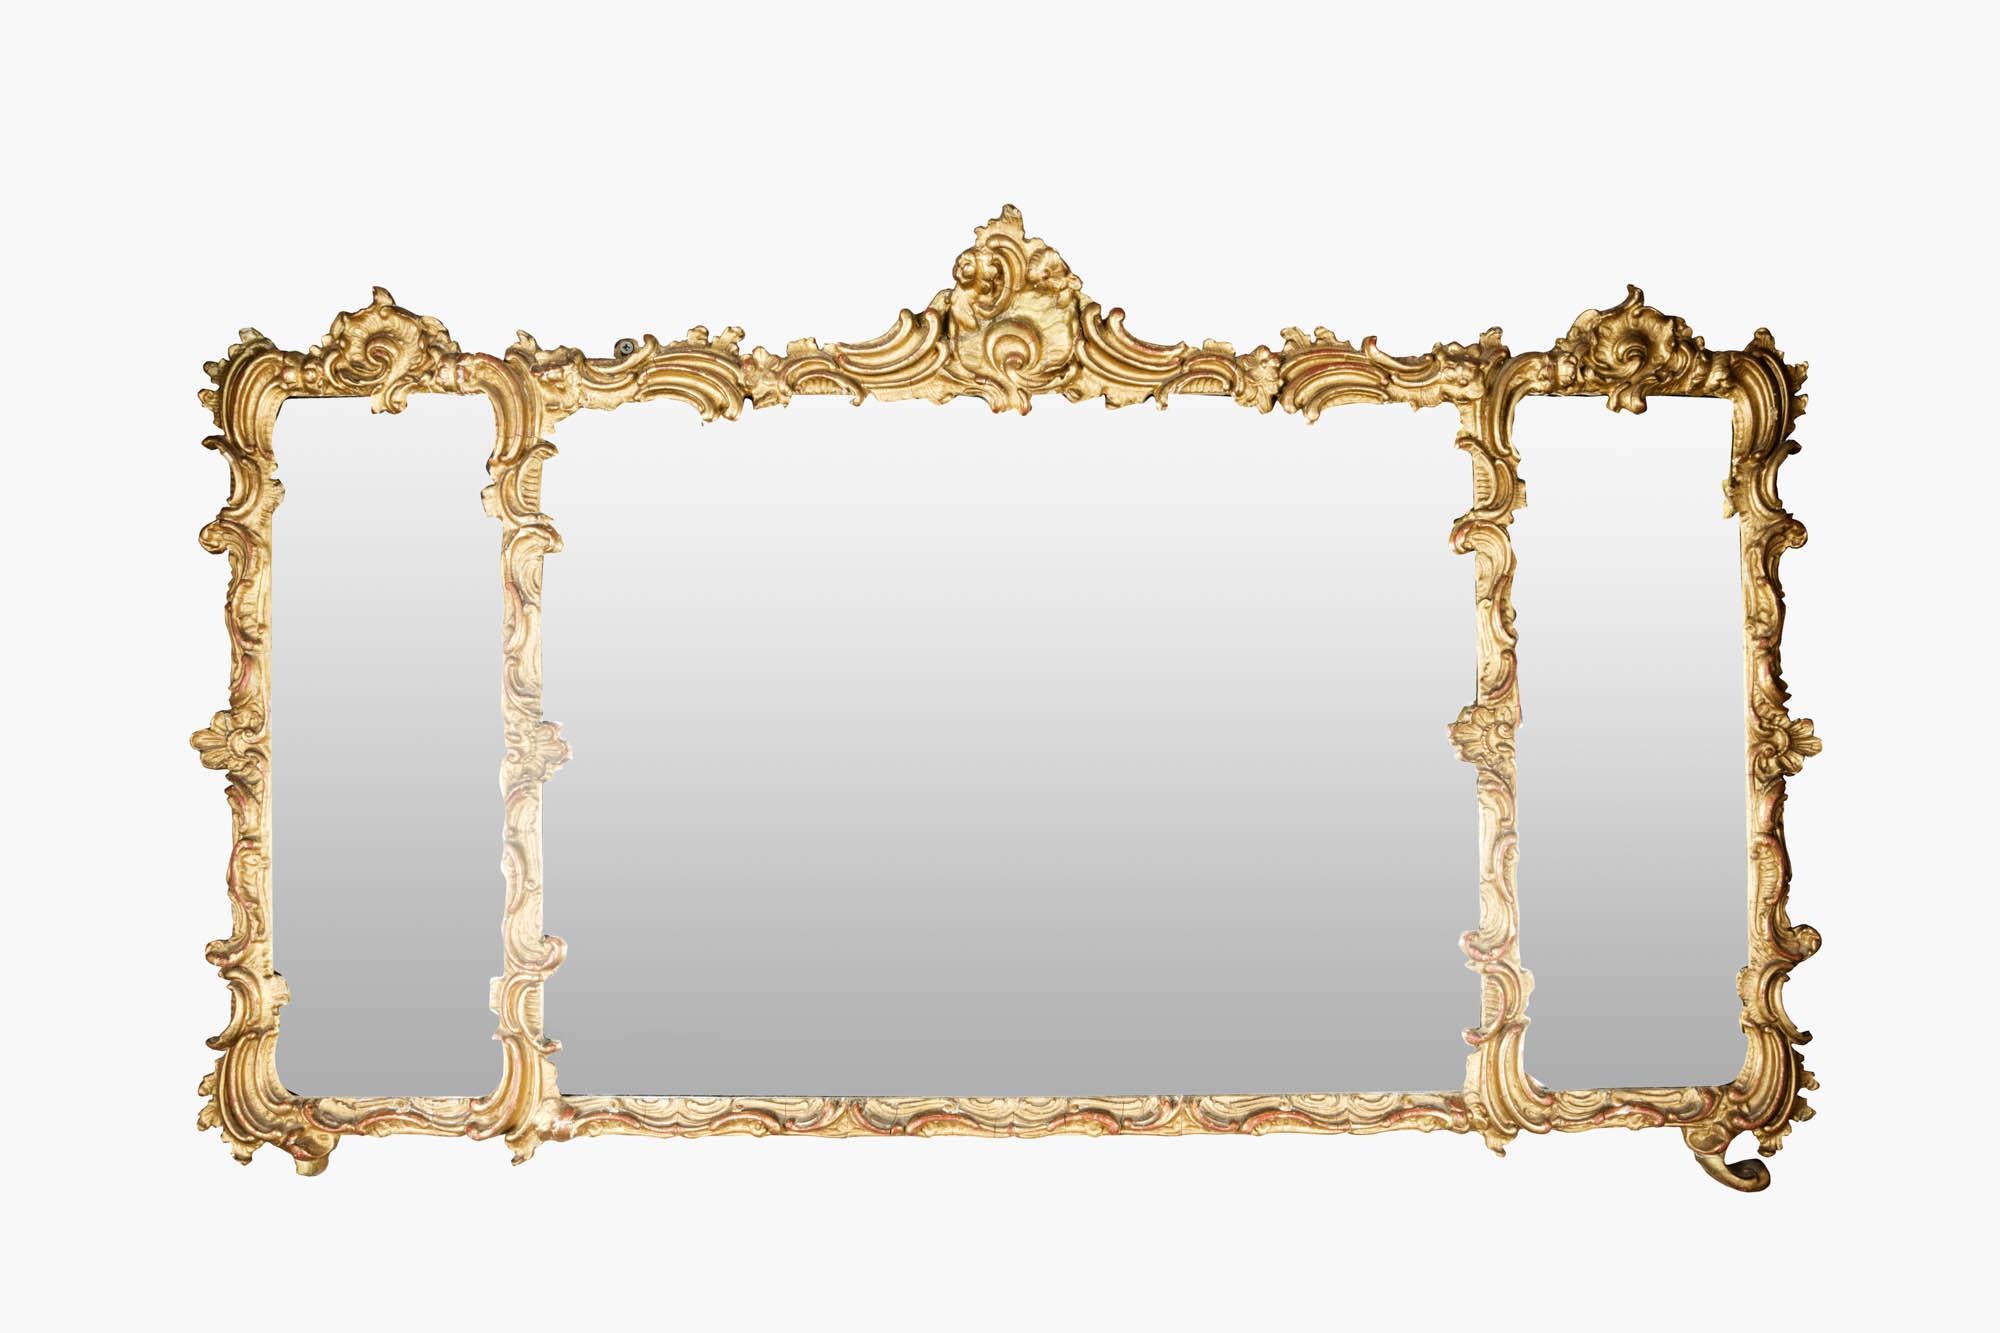 19e siècle Miroir à trumeau de style Régence, doré et ornementé, avec trois panneaux de verre. Le cadre aux détails complexes, orné de fleurs et de fioritures de style rococo, comprend d'élégants motifs de feuilles d'acanthe, de coquillages et de